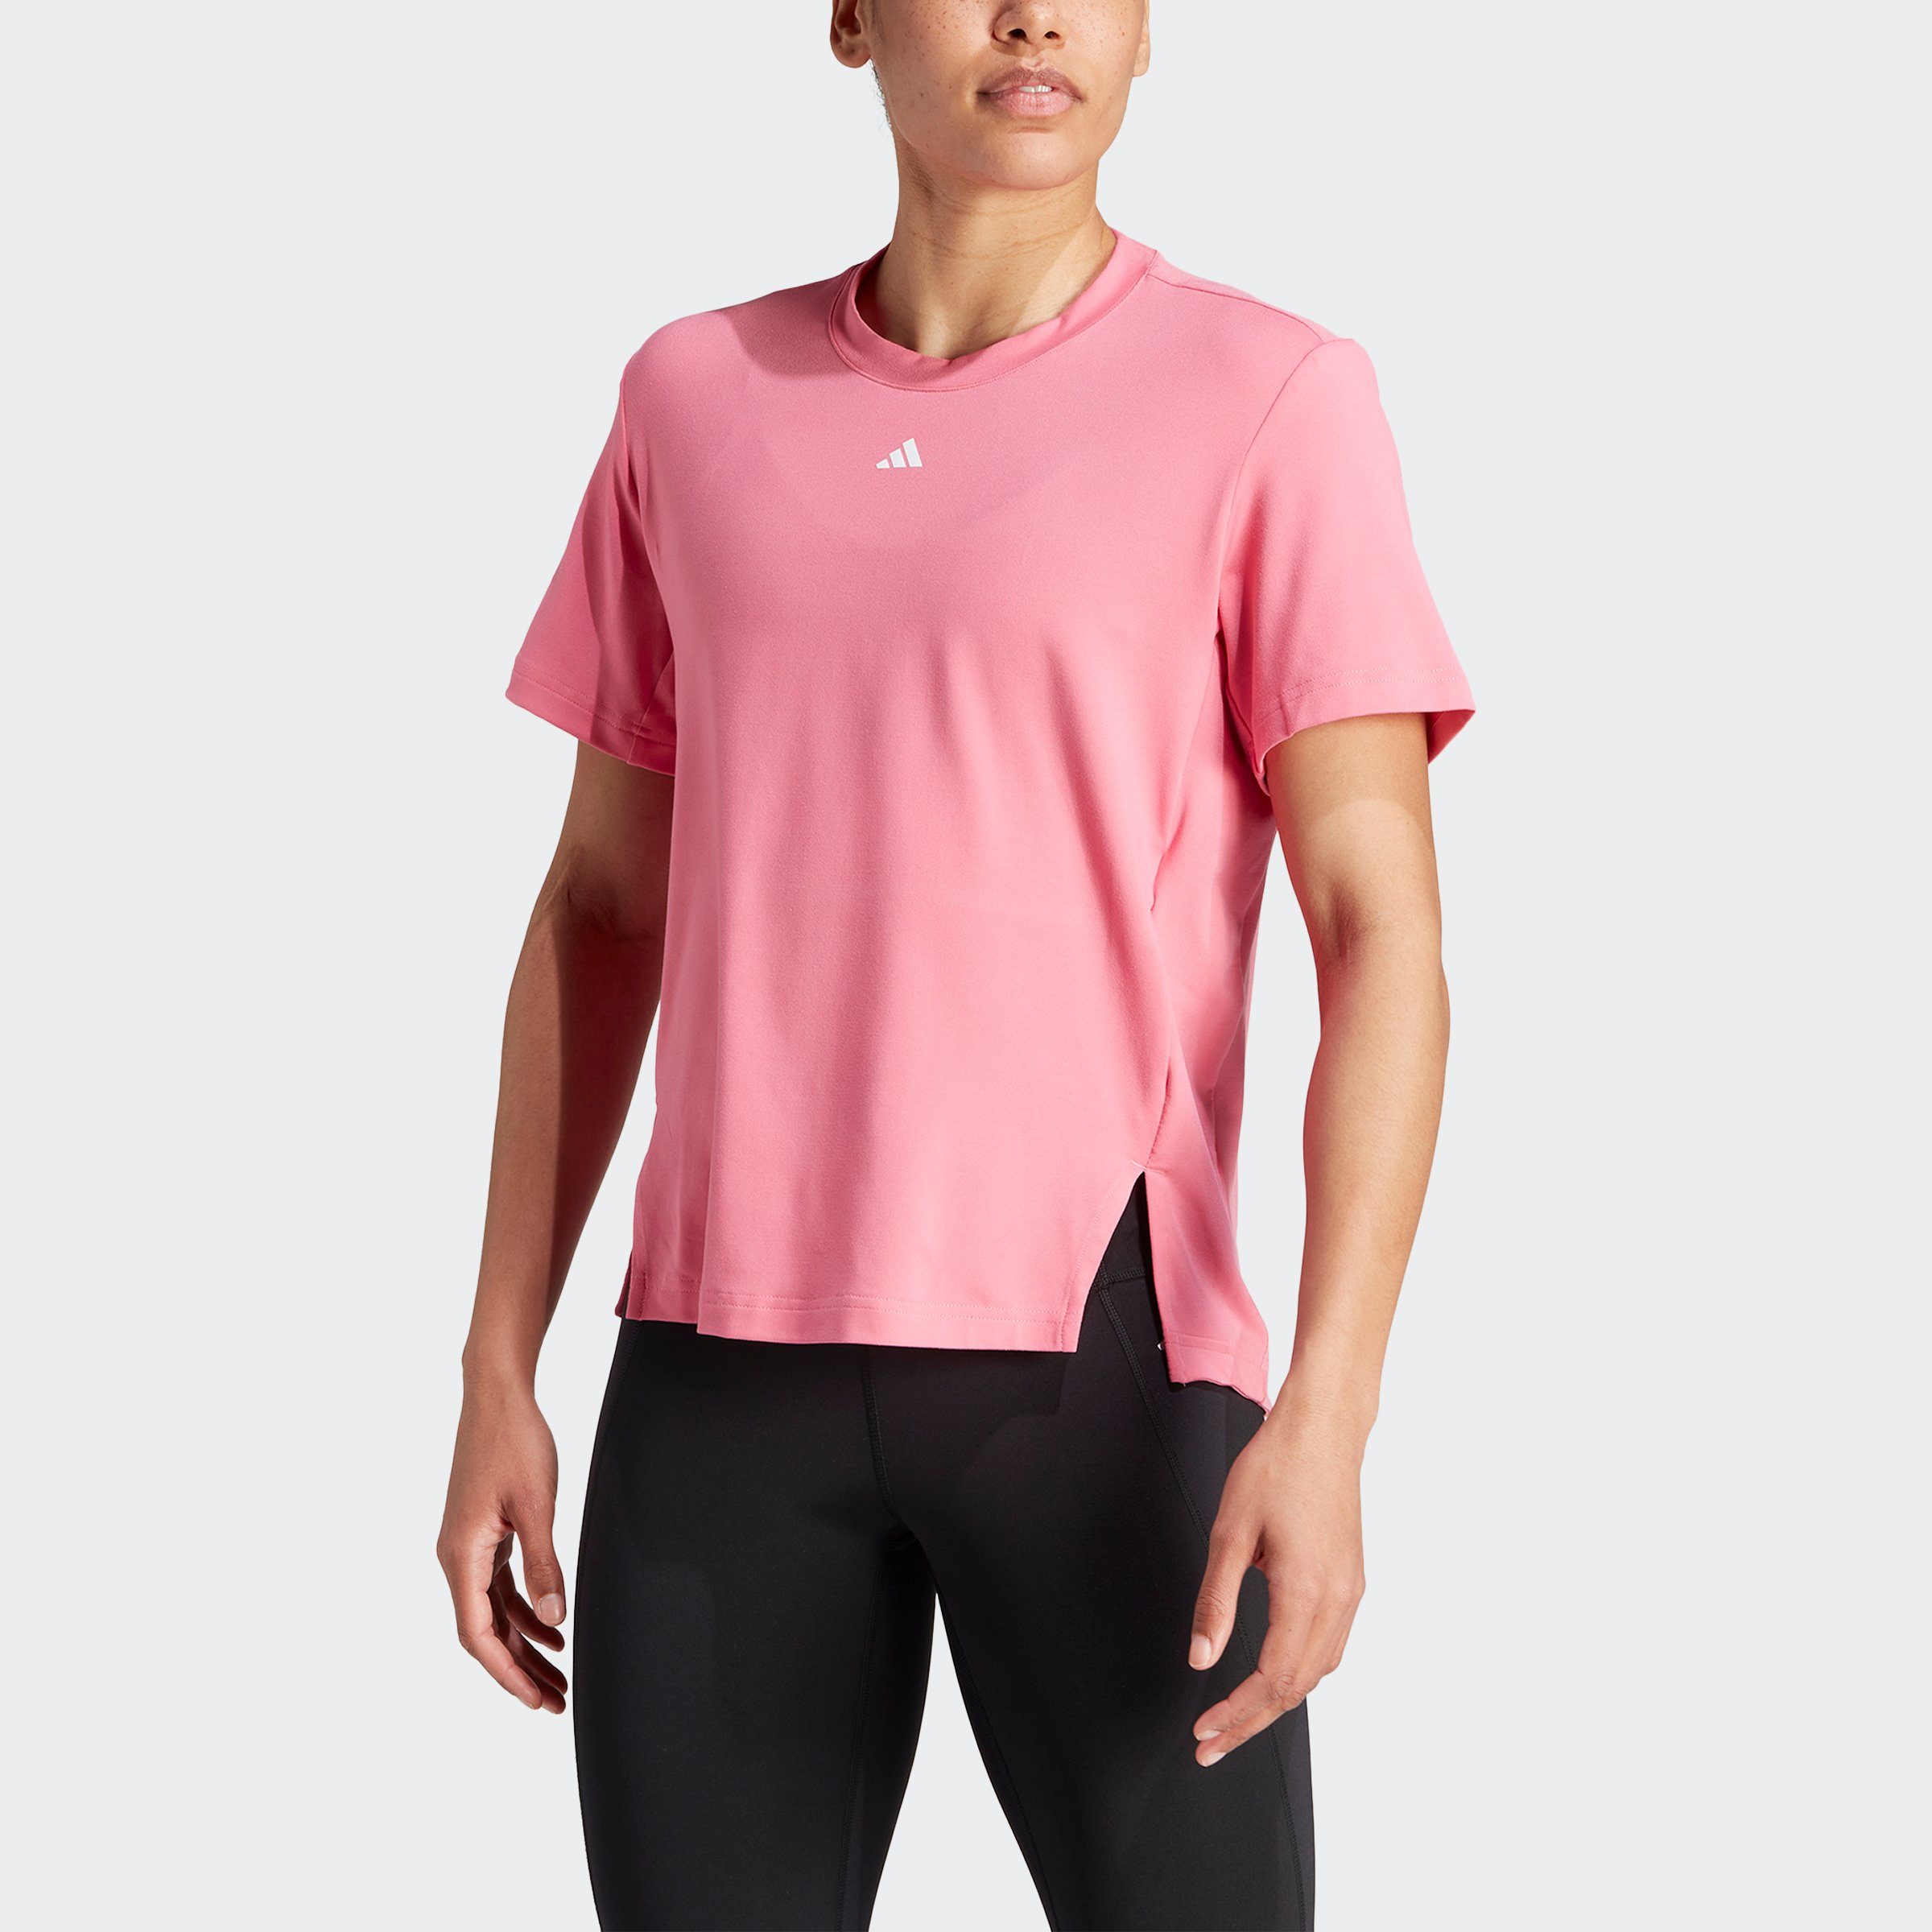 Fusion VERSATILE T-Shirt / Performance White Pink adidas